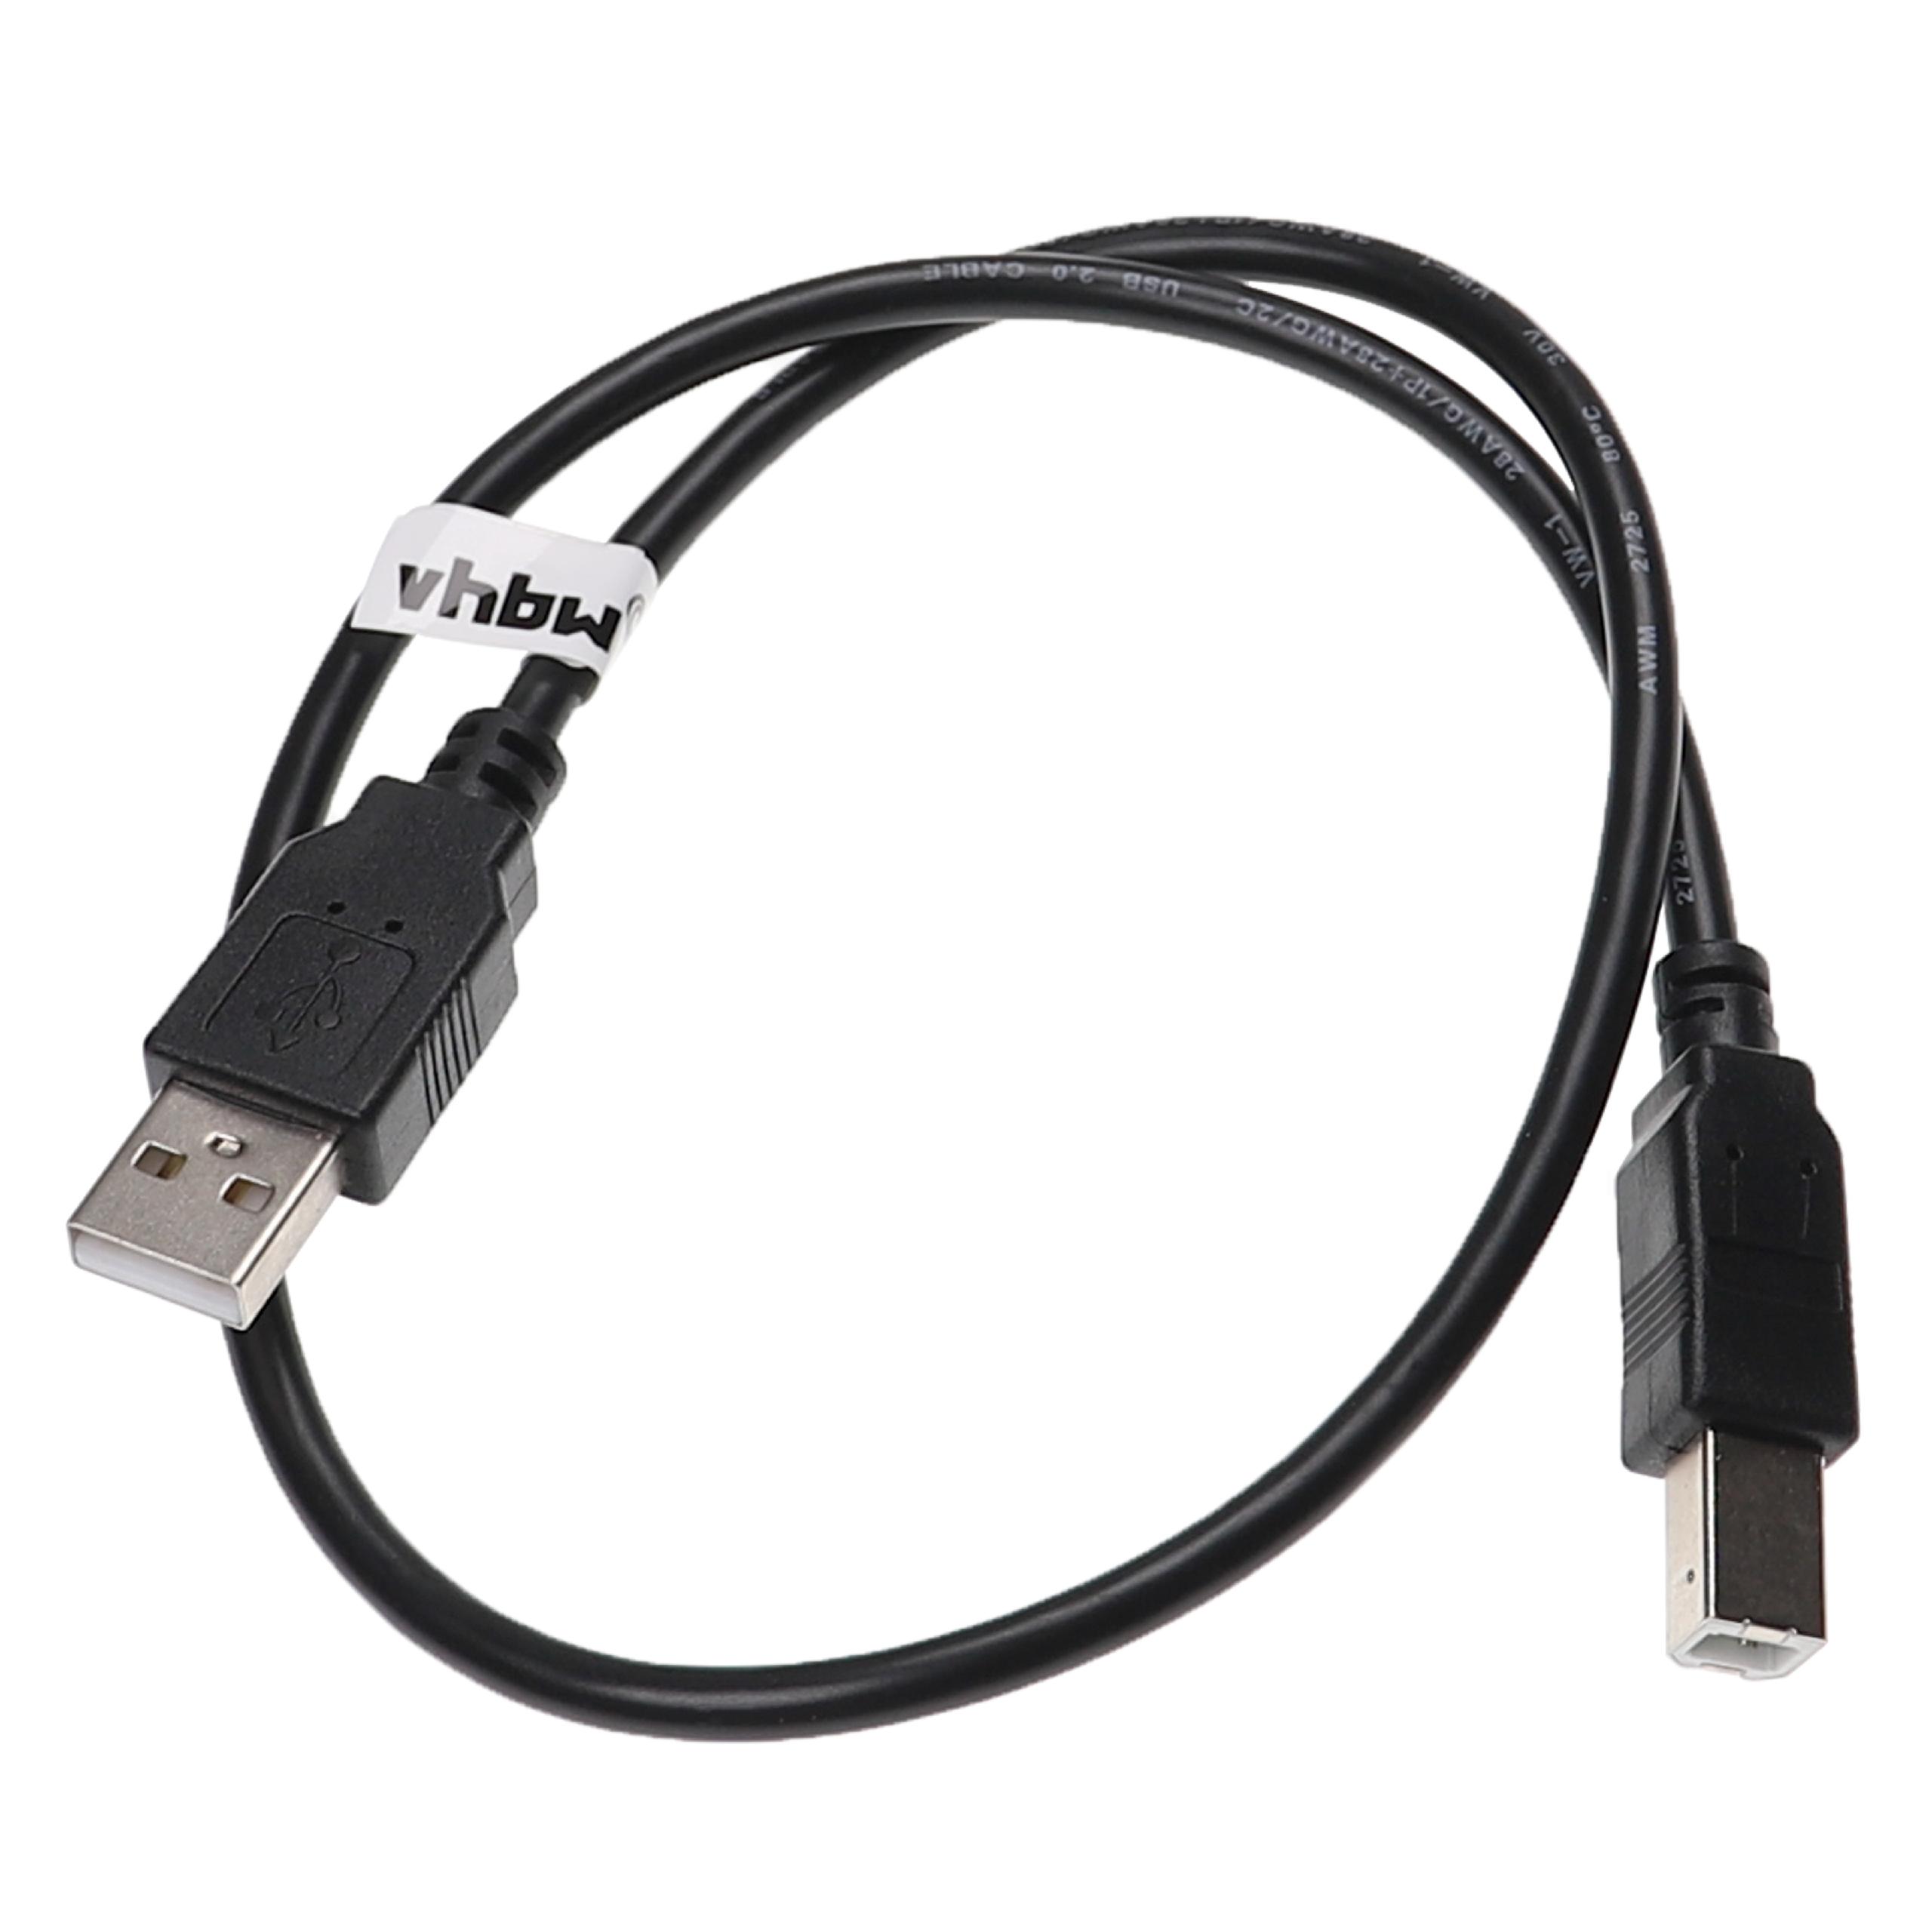 Vhbw cavo della stampante cavo per scanner cavo adattatore da USB